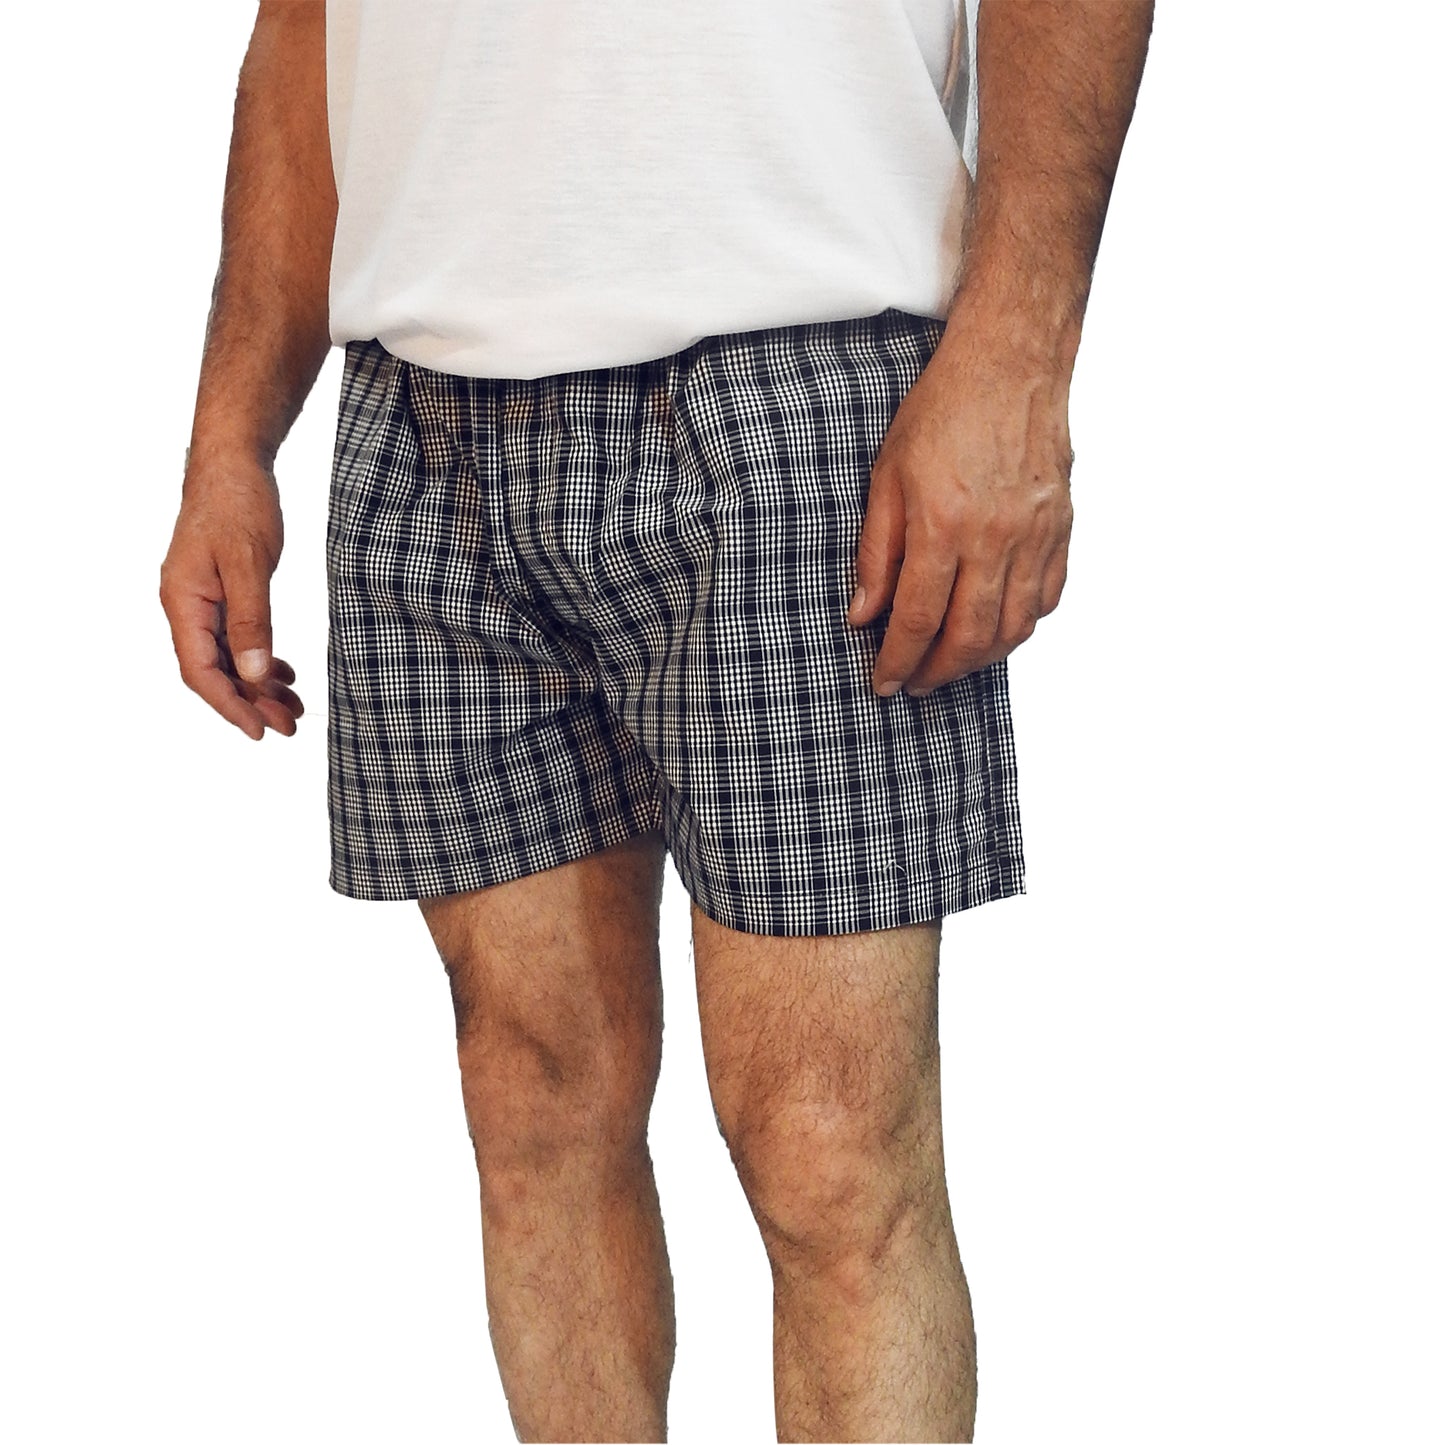 men's-cotton-boxer-shorts-online